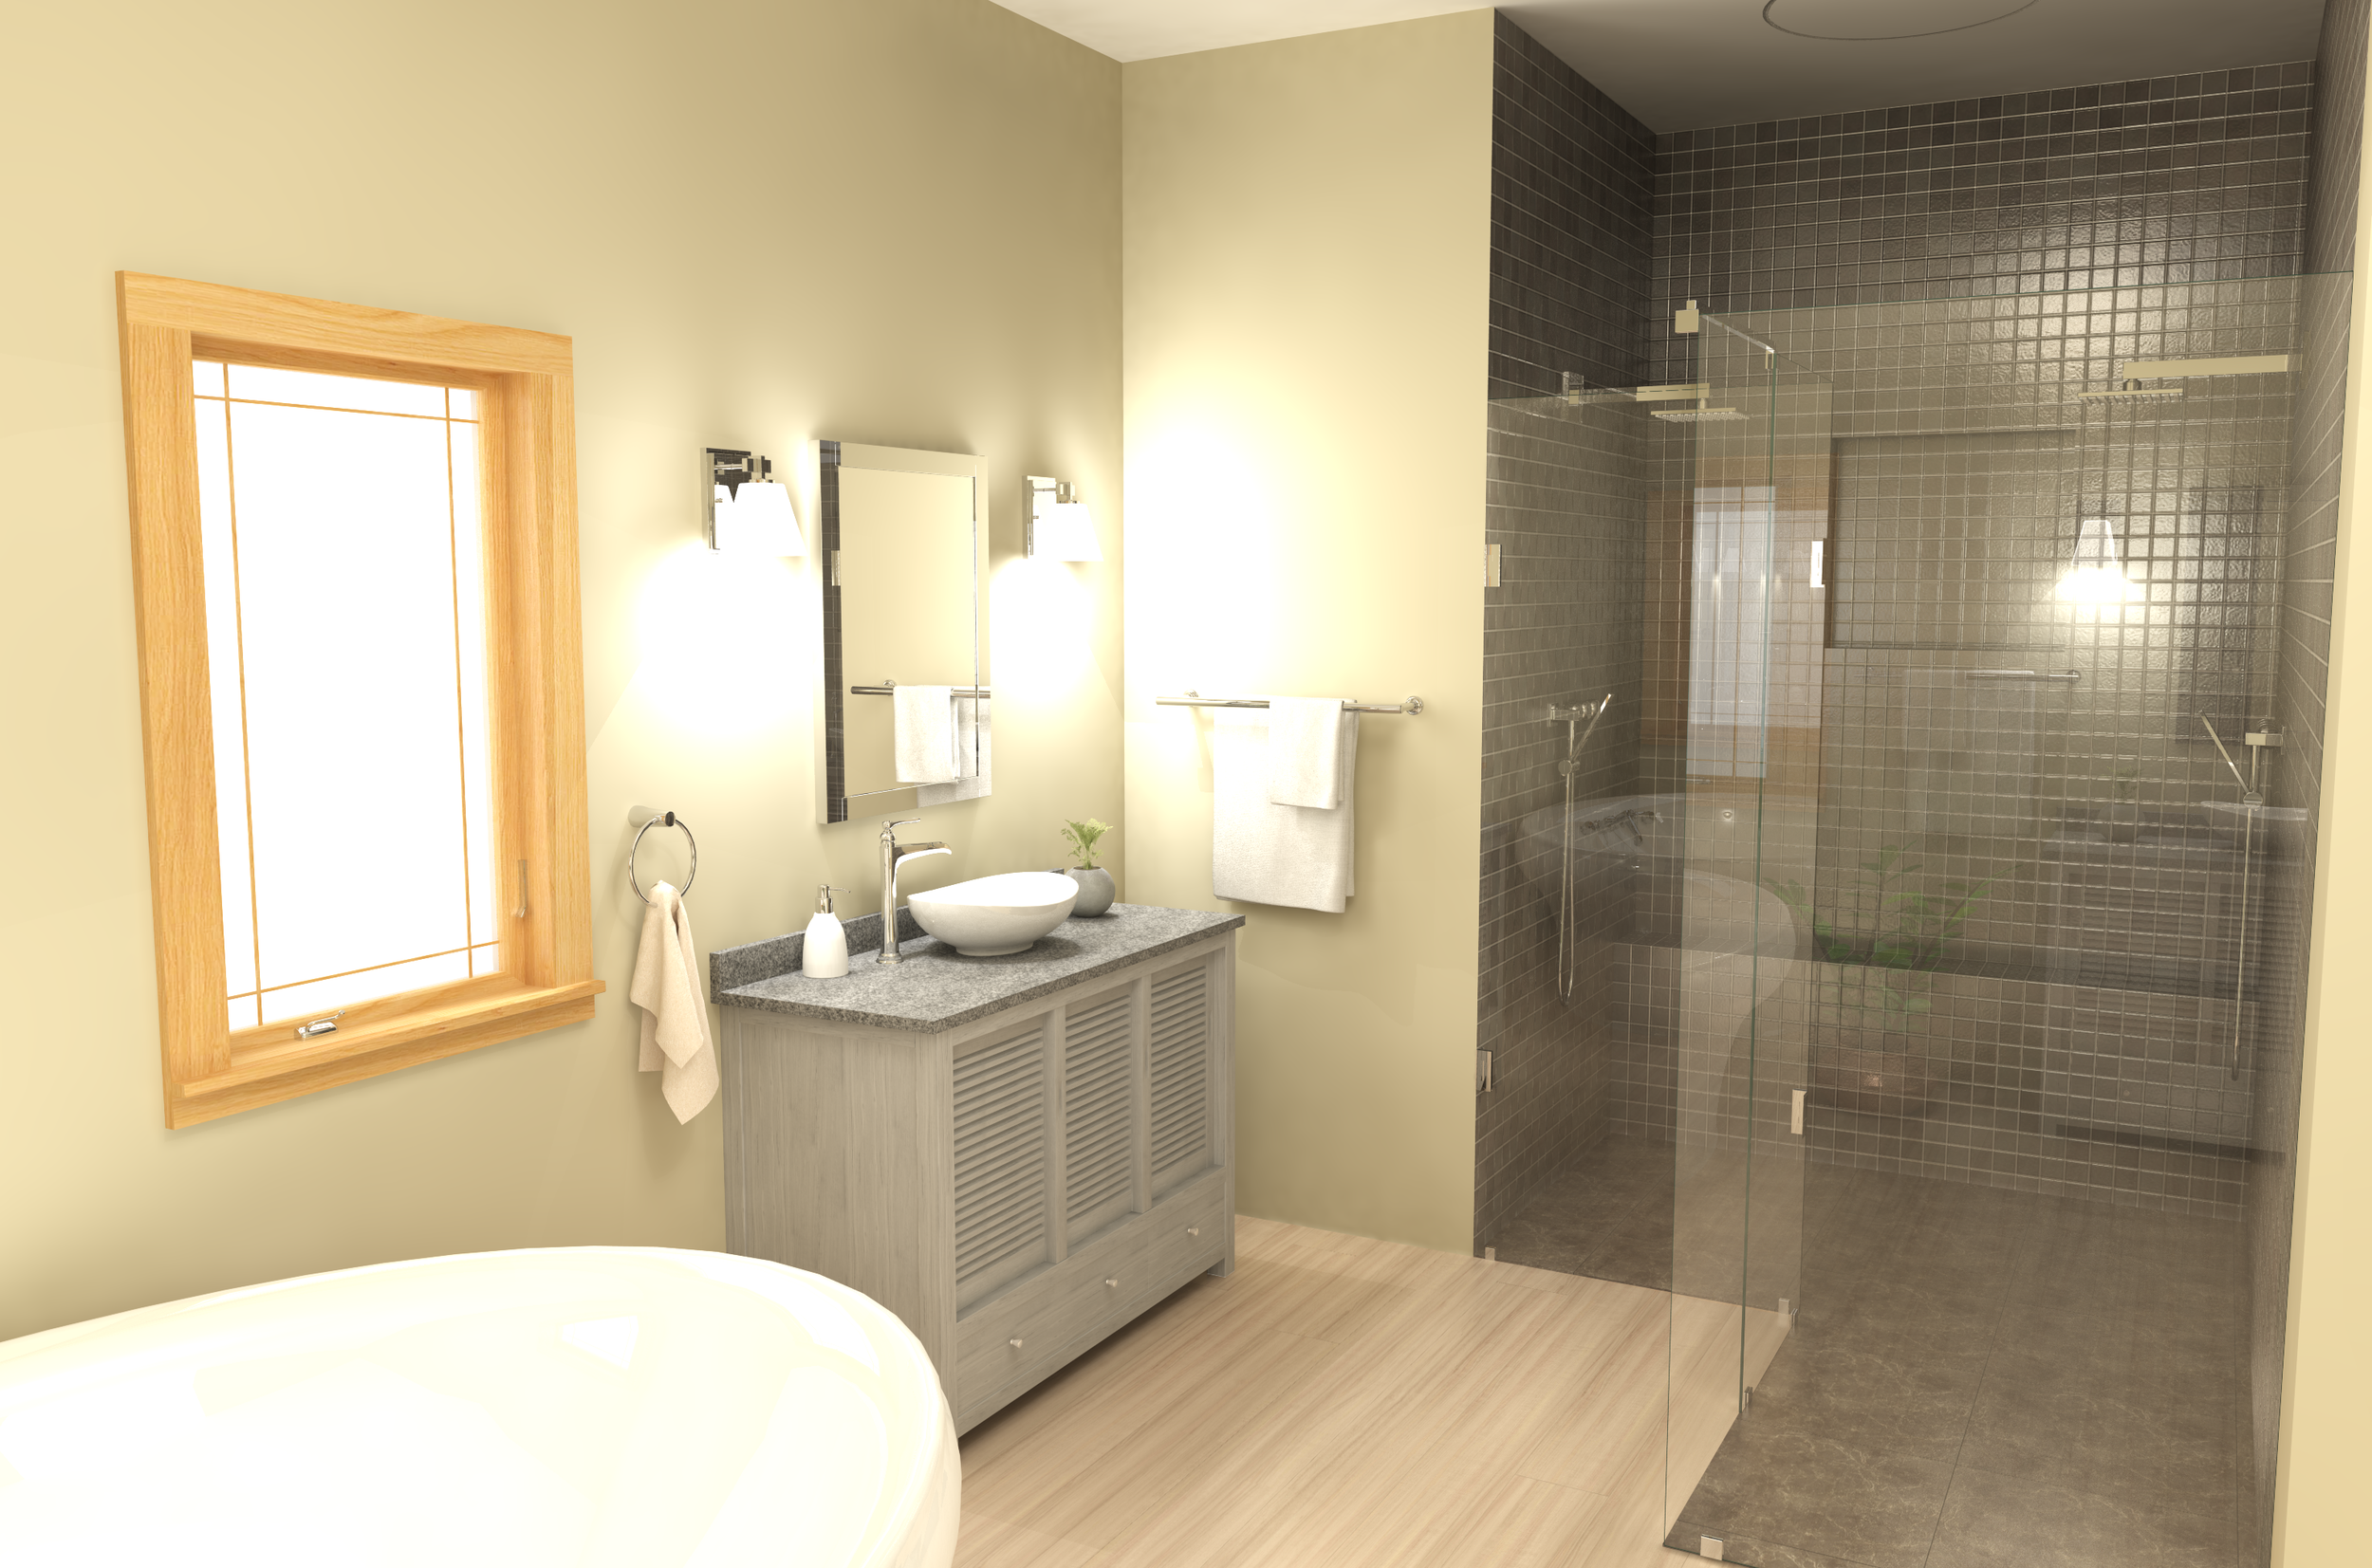 Sample bathroom design 2020-03-22 18003900000.png